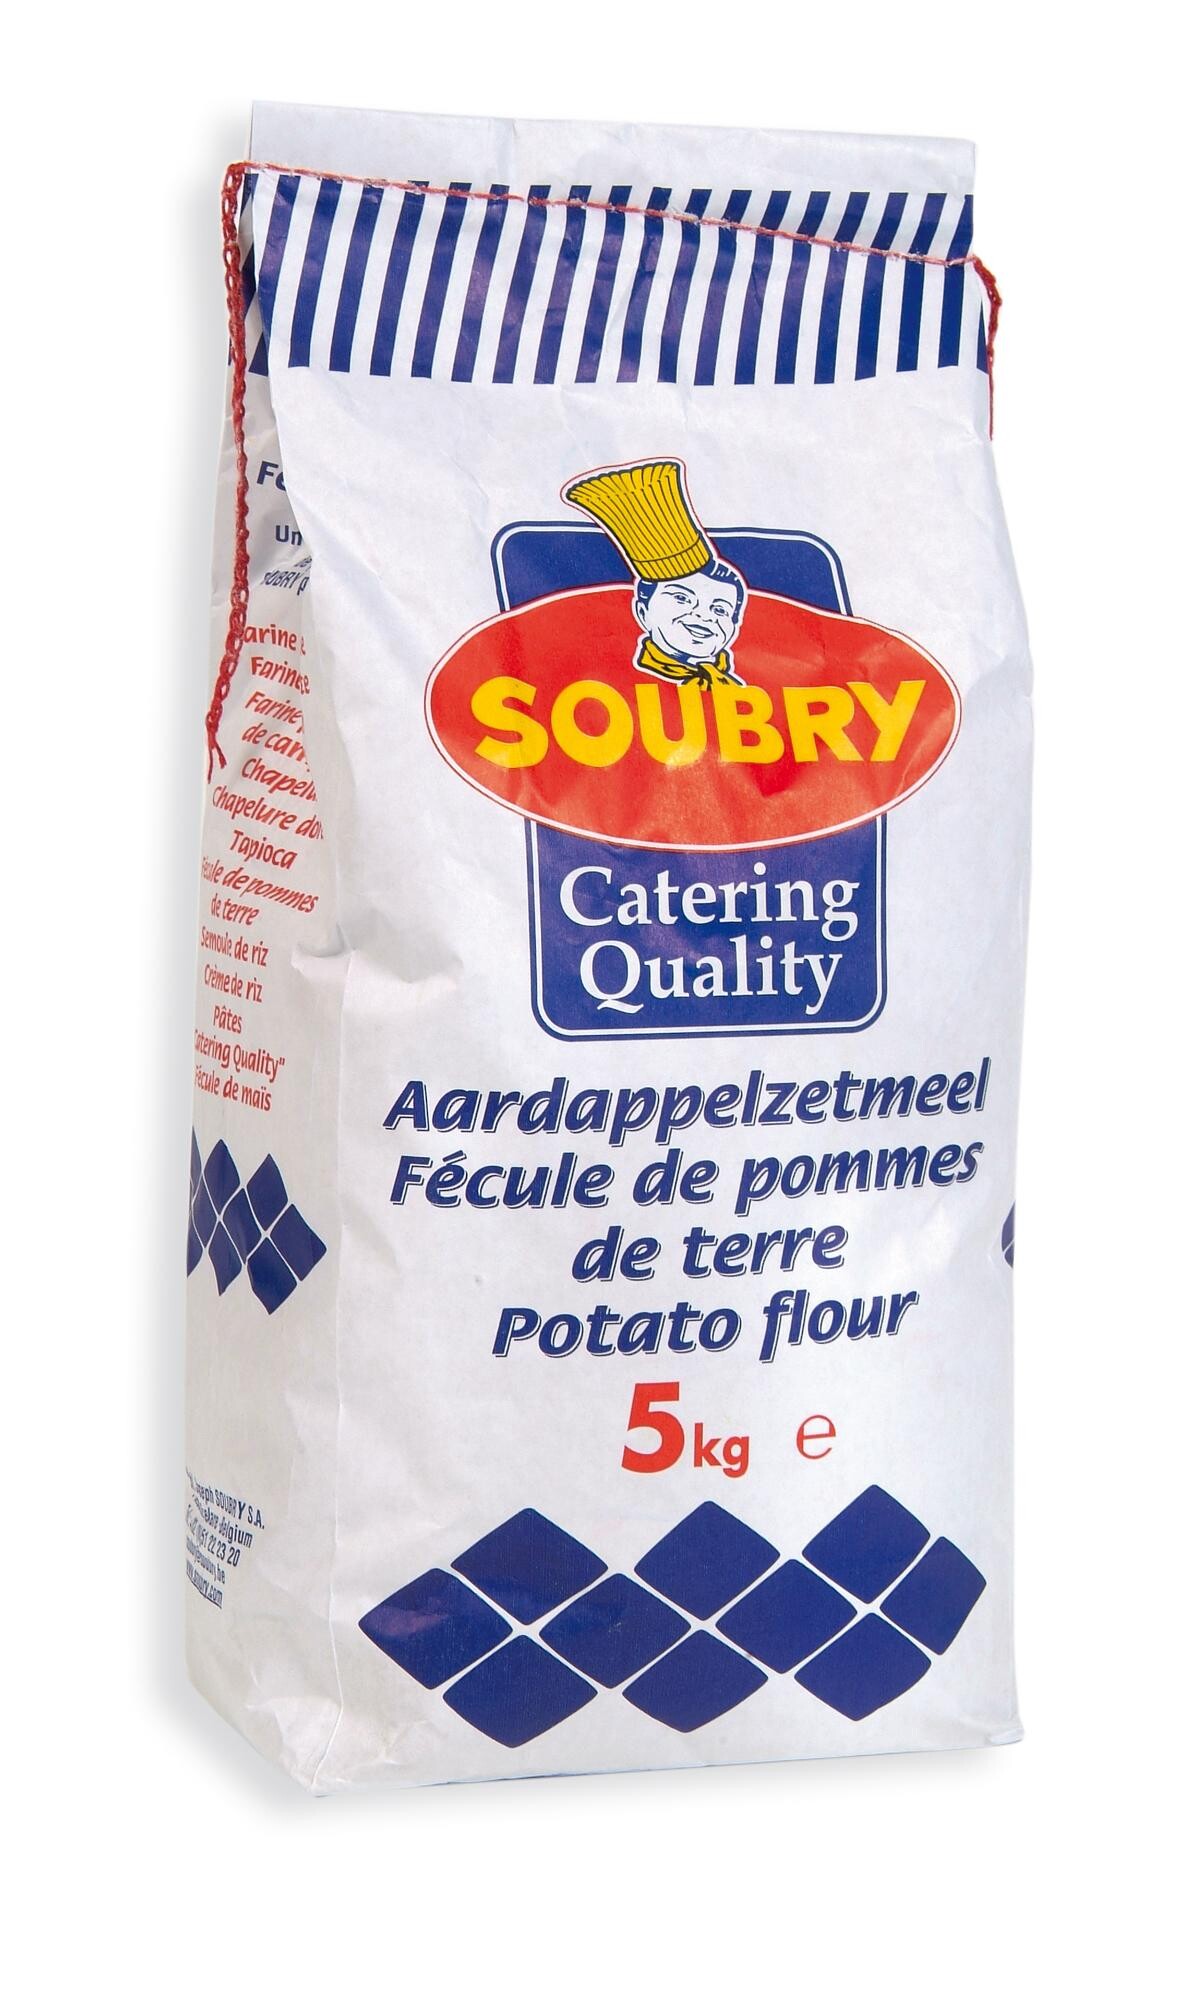 Potato flour 5kg Soubry